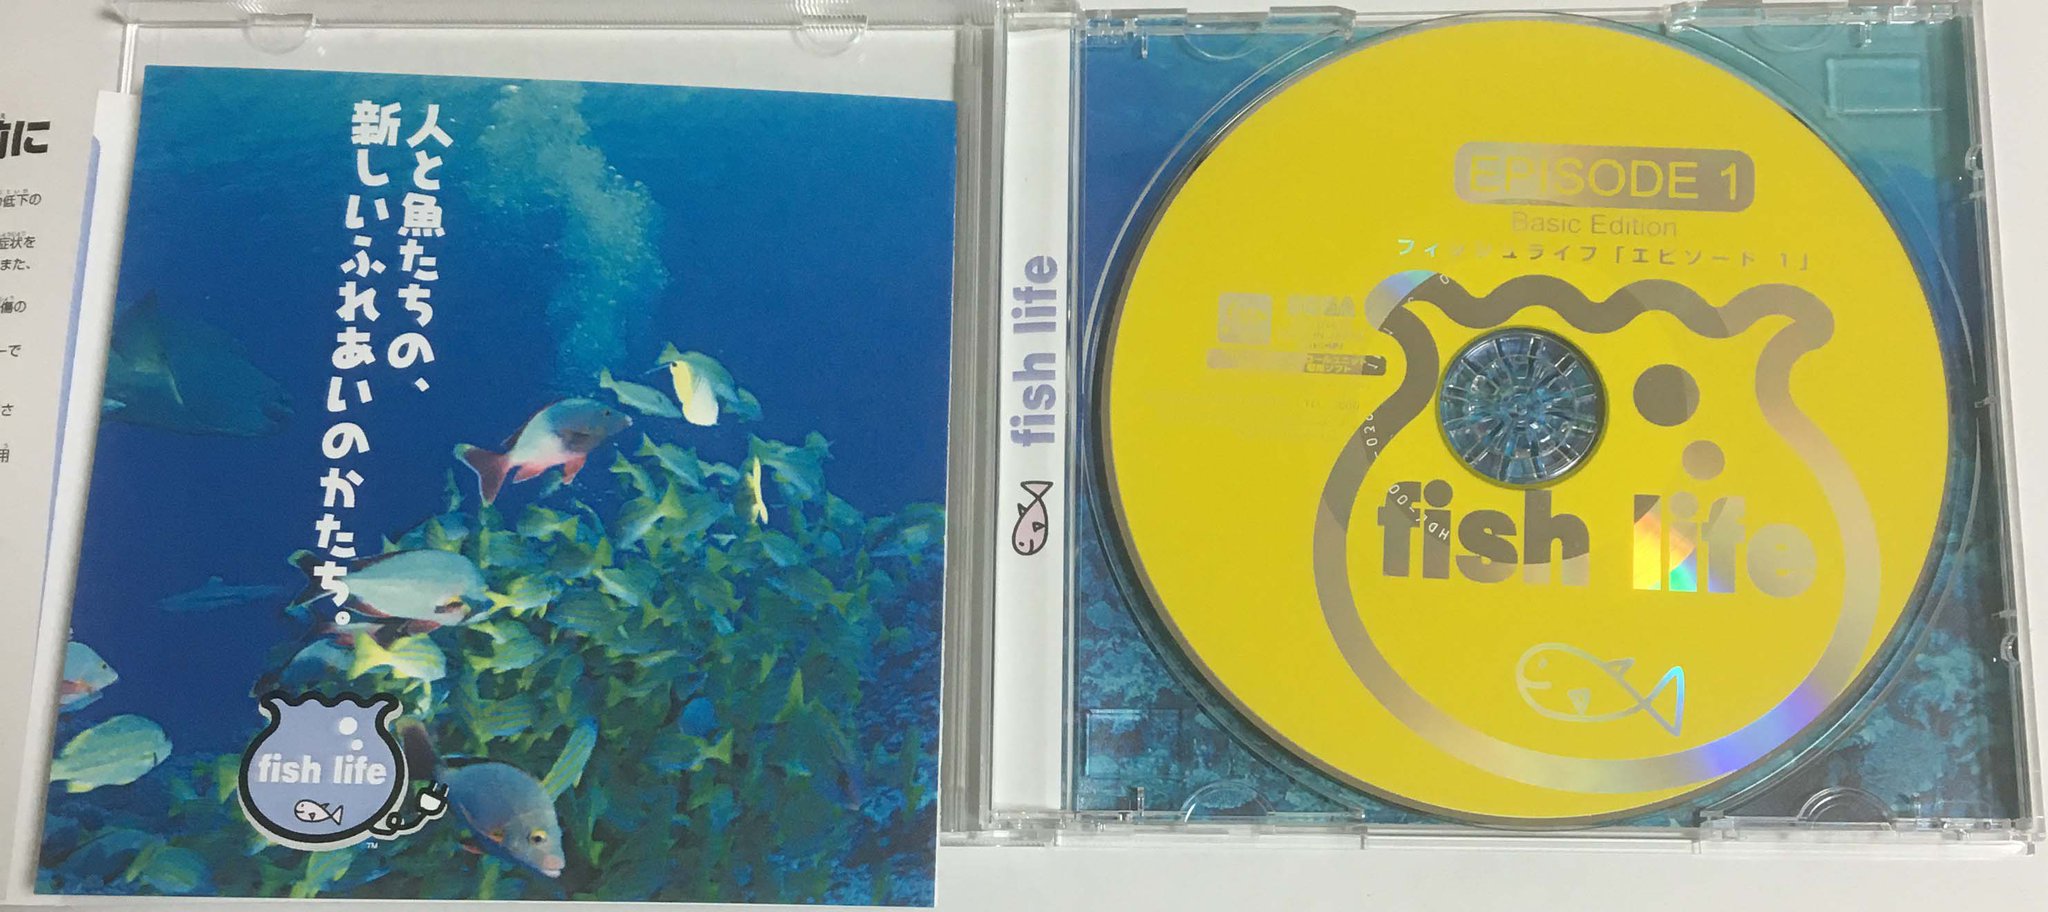 La boite et le CD de Fish Life Episode 1 Basic Edition